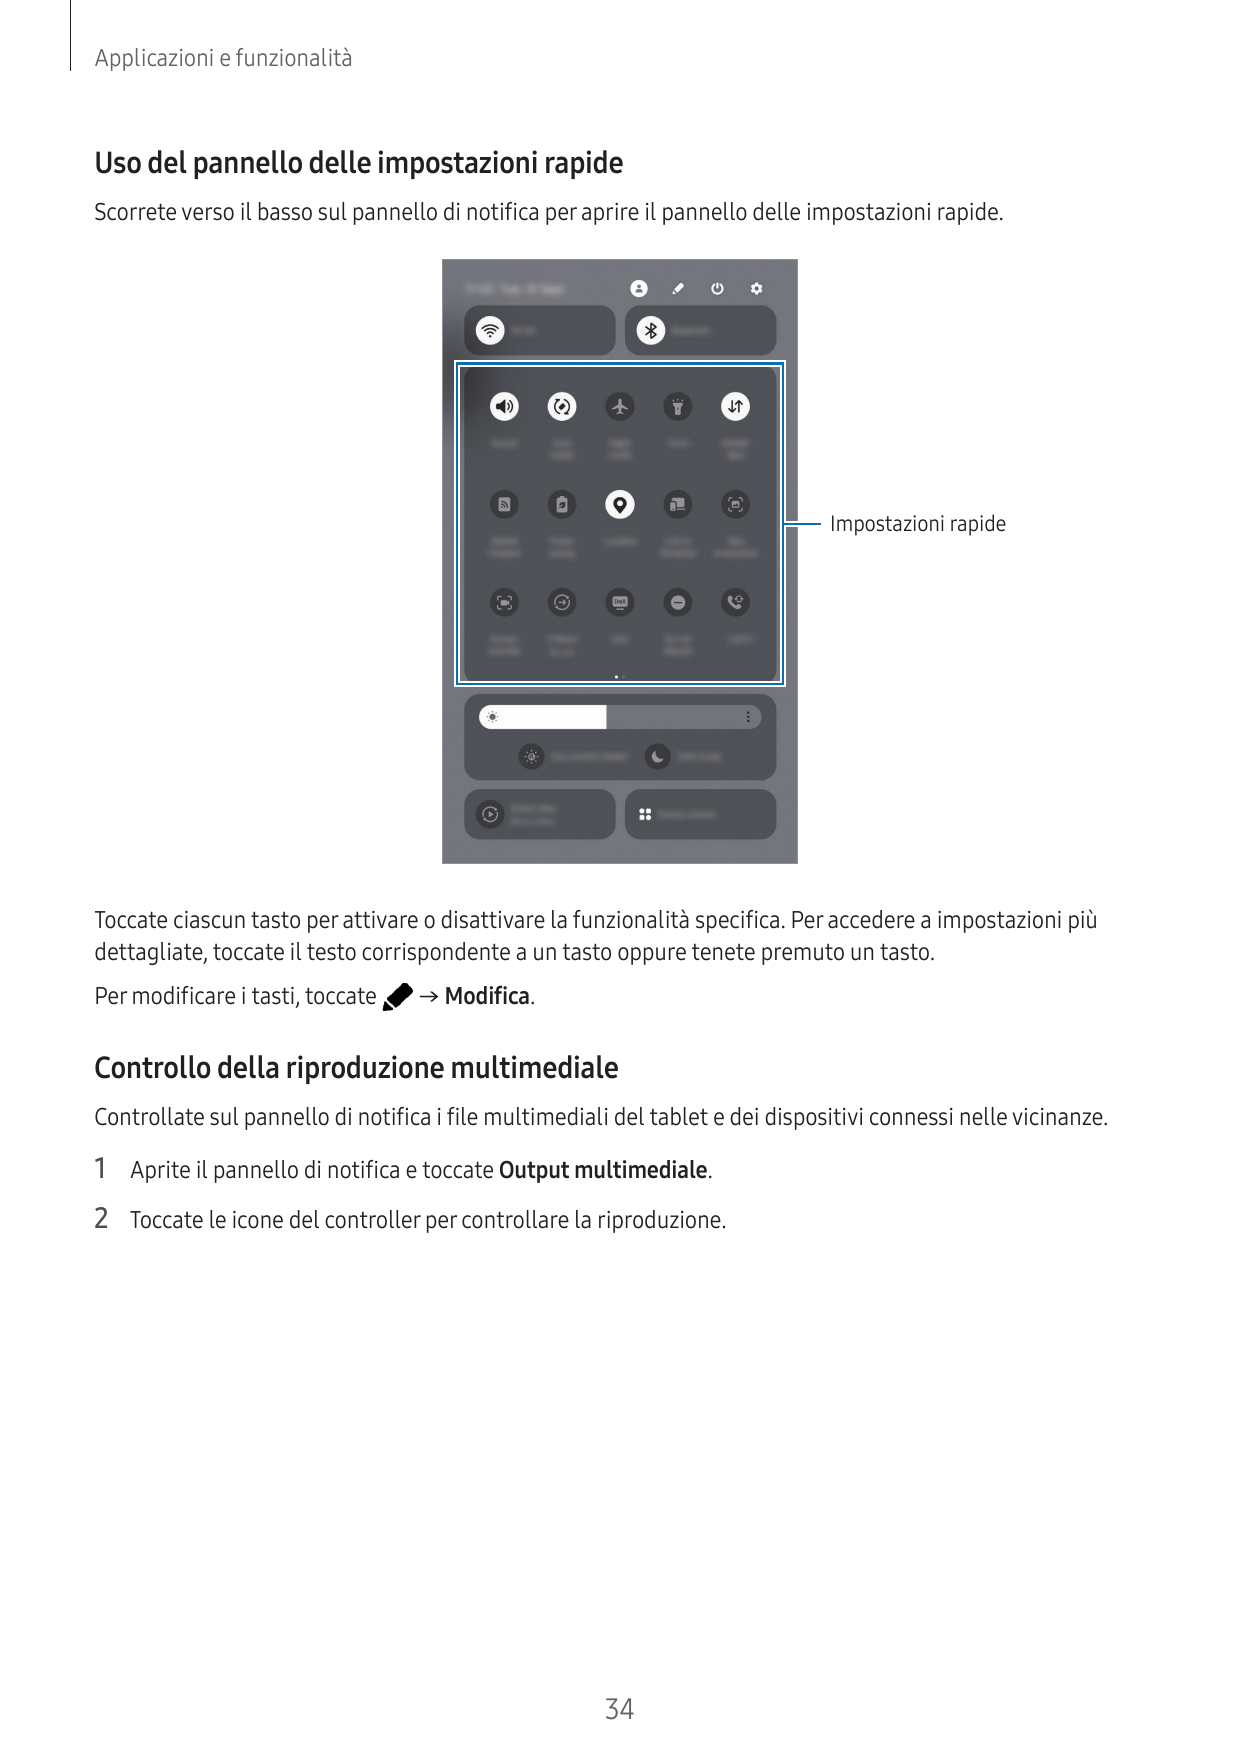 Applicazioni e funzionalitàUso del pannello delle impostazioni rapideScorrete verso il basso sul pannello di notifica per aprire